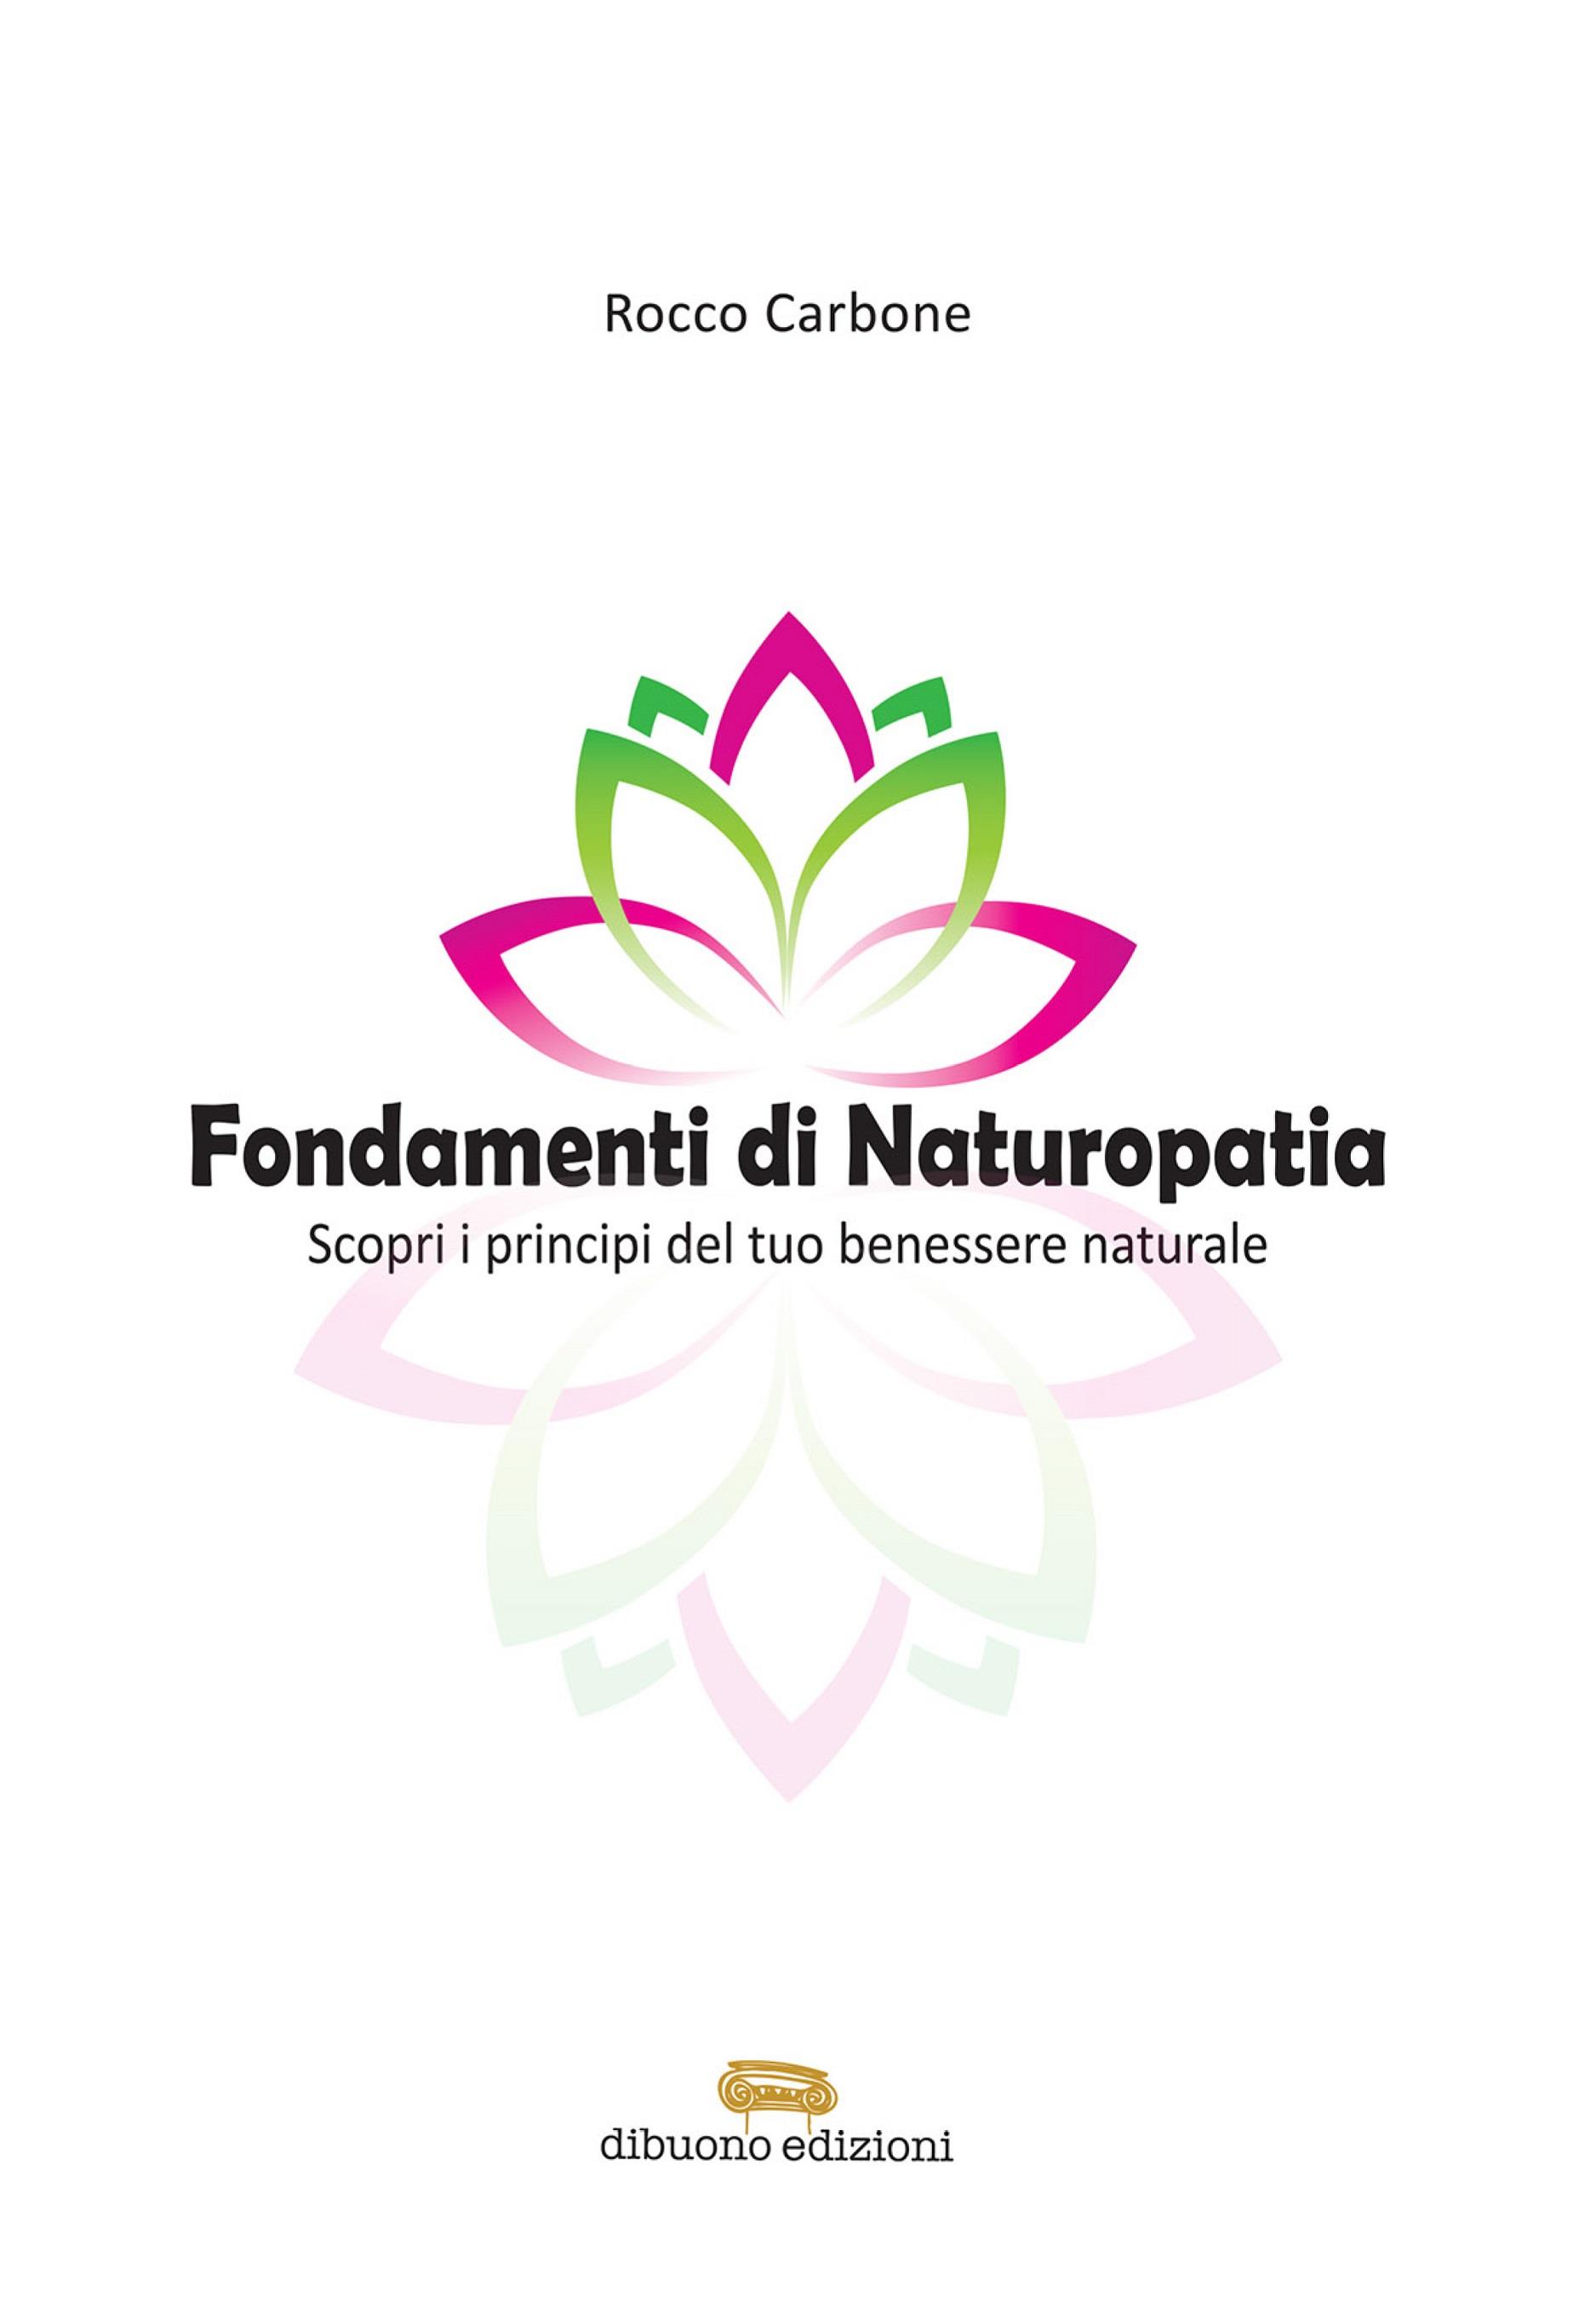 Fondamenti di Naturopatia Scopri i principi del tuo benessere naturale